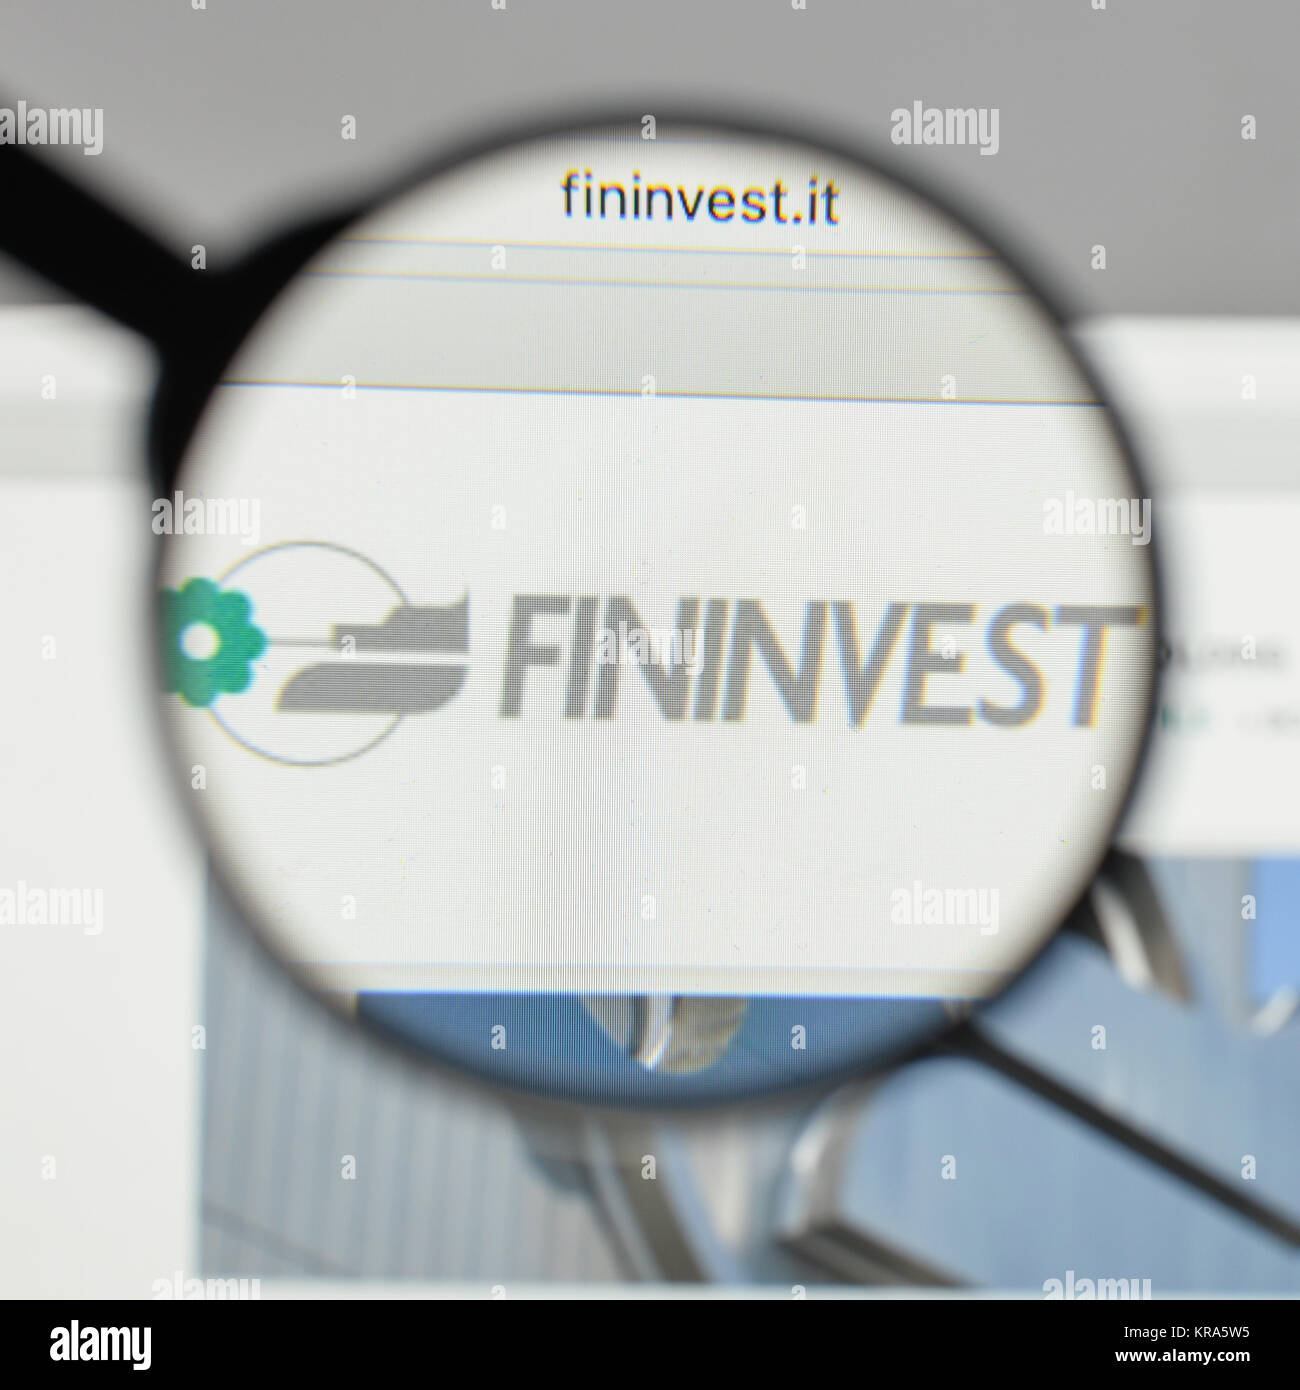 Milano, Italia - 10 agosto 2017: Fininvest logo sulla homepage del sito web. Foto Stock